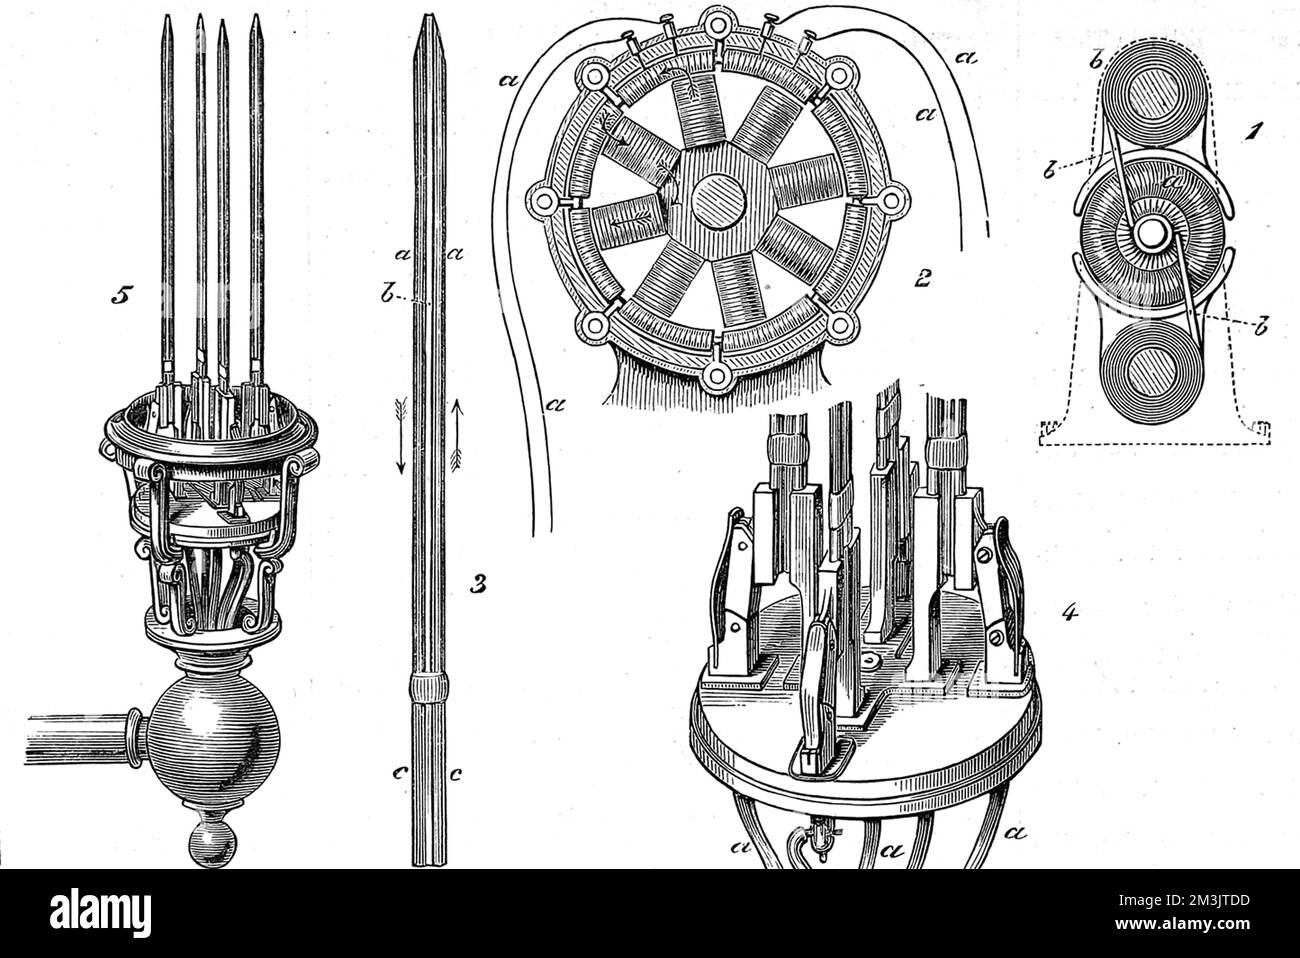 Diagramme mit Jablochkoffs Kerzenlampe. Paul Jablochkoff (1847-1894) war ein russischer Telegrafeningenieur, der zum Direktor der Telegramme zwischen Moskau und Kursk aufsteigen sollte. Auf seinen Reisen in Frankreich im Jahr 1876 entwickelte er seine elektrische „Kerze“, die erste Lampe, die in großen Mengen verwendet wurde. Die Kohlenstoffe standen aufrecht, parallel zueinander, was bedeutete, dass die Kerze keine komplexen Regelmechanismen erforderte, aber ihre wichtigste Bedeutung war, dass sie die Öffentlichkeit auf elektrisches Licht aufmerksam machte. Vermarktet von der Société Generale D'Electricite und benutzt, um Straßen zu beleuchten, öffentliche Bauten Stockfoto